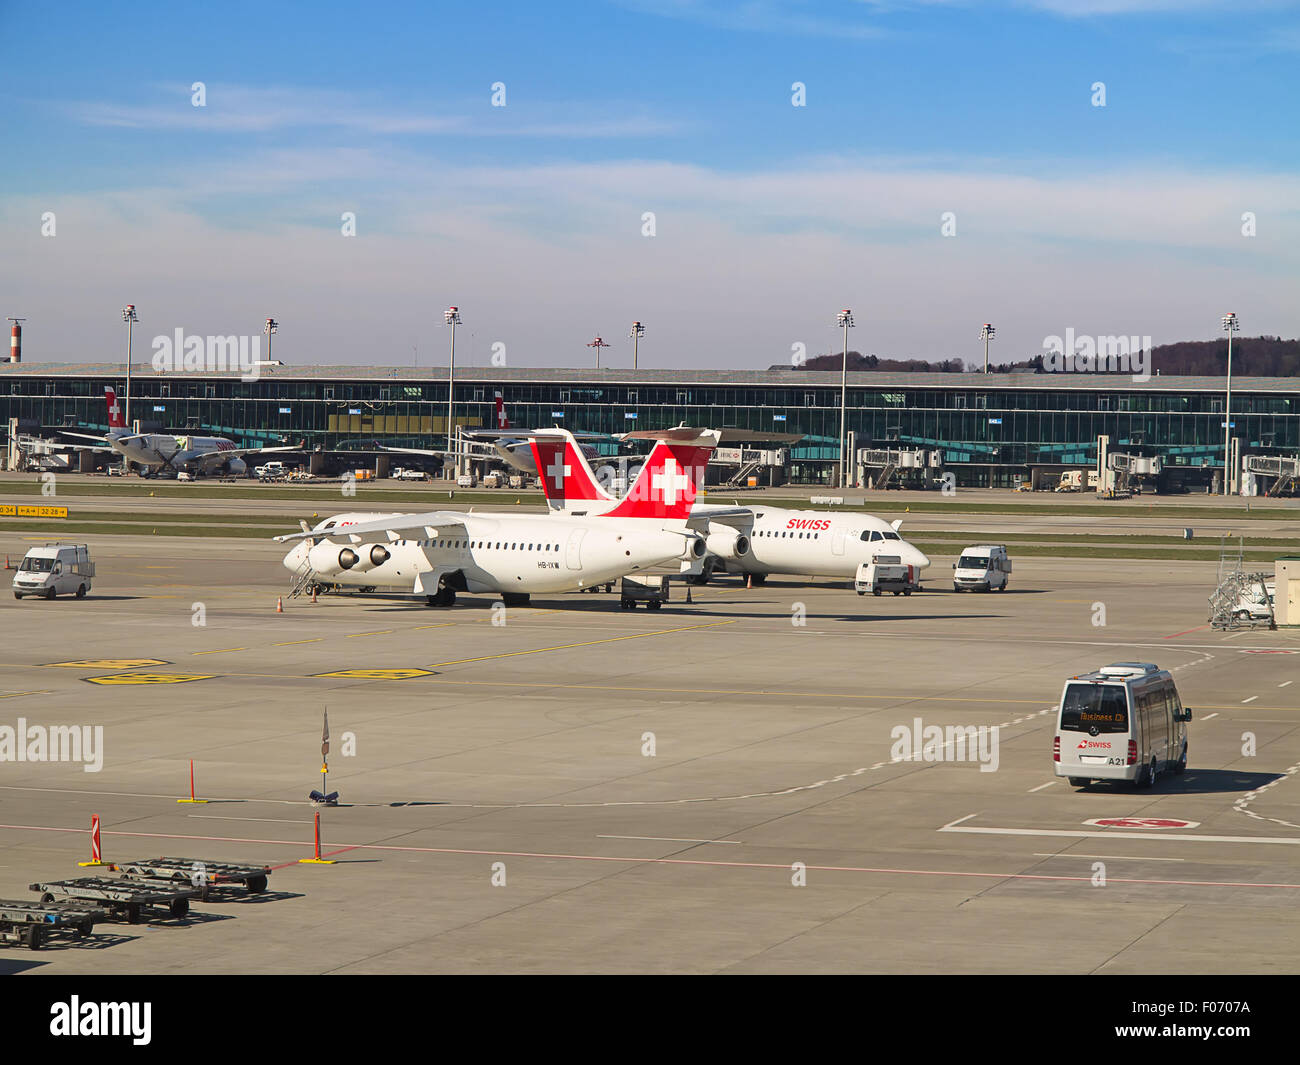 ZURICH - JULY 18: AVRO RJ100 in Zurich airport after short haul flight on July 18, 2015 in Zurich, Switzerland. Zurich airport i Stock Photo